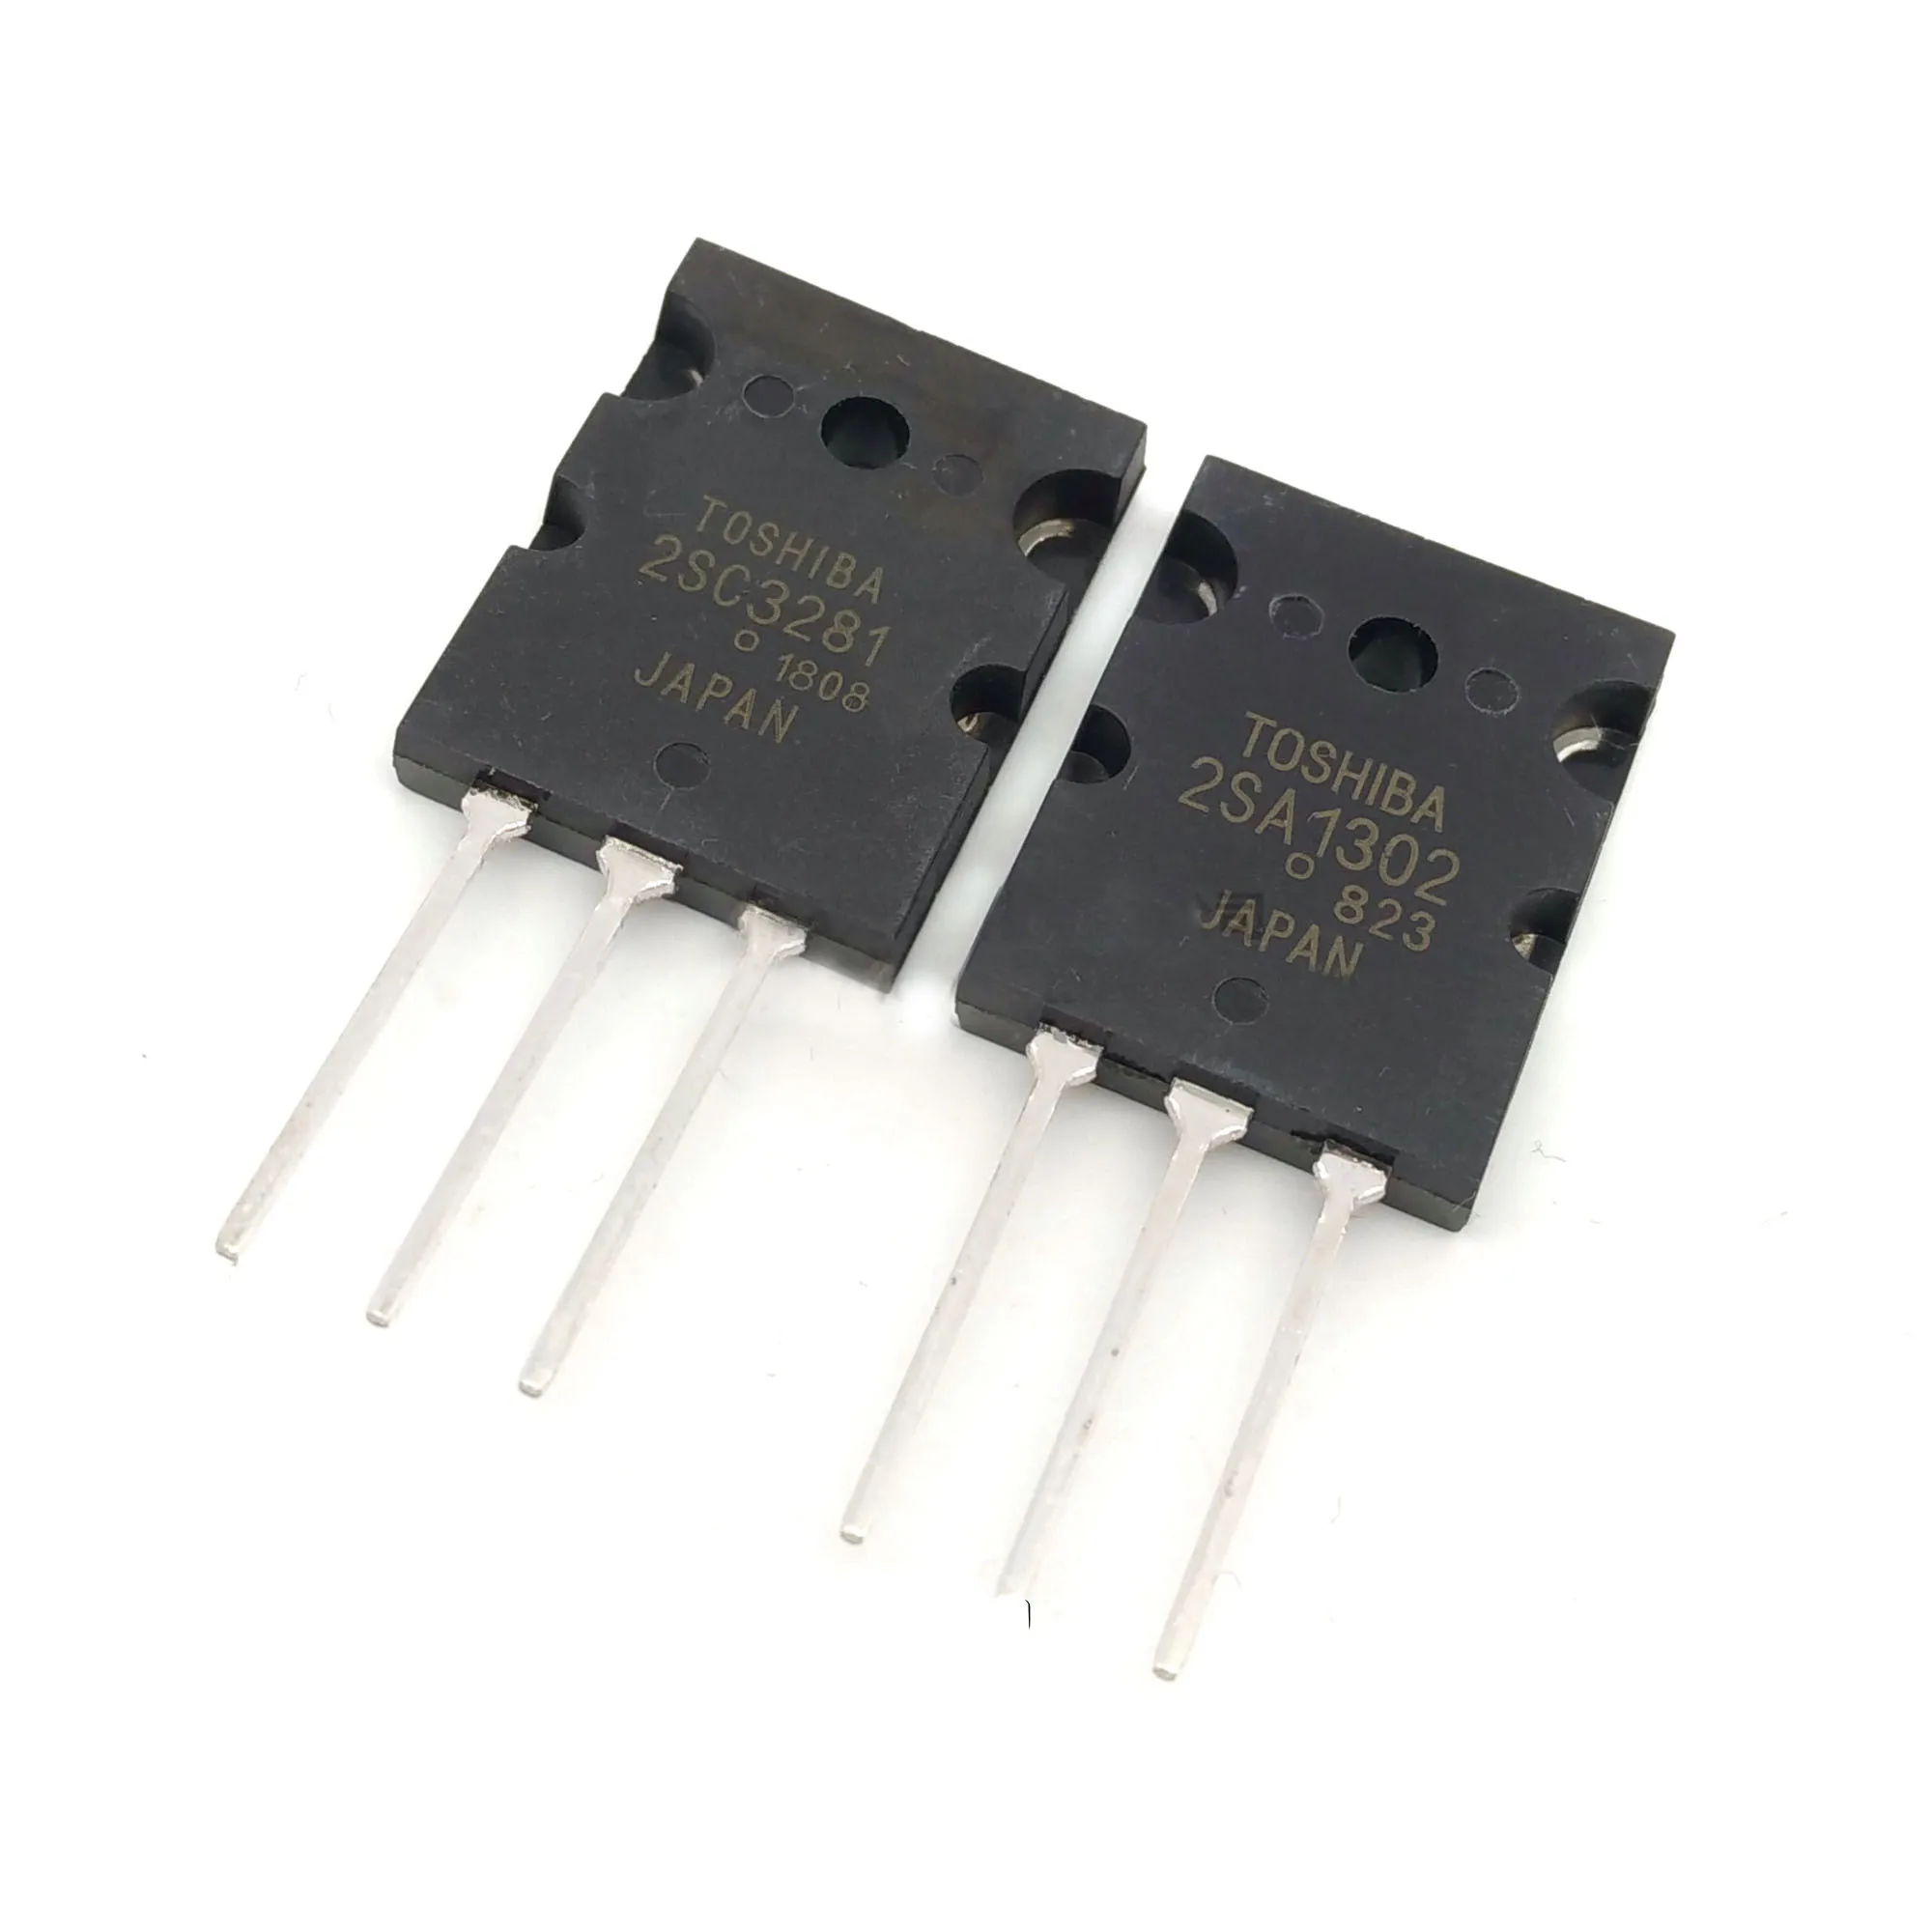 1 pair C3281 Power Transistor 2SA1302-R A1302 & 2SC3281-R 1 each